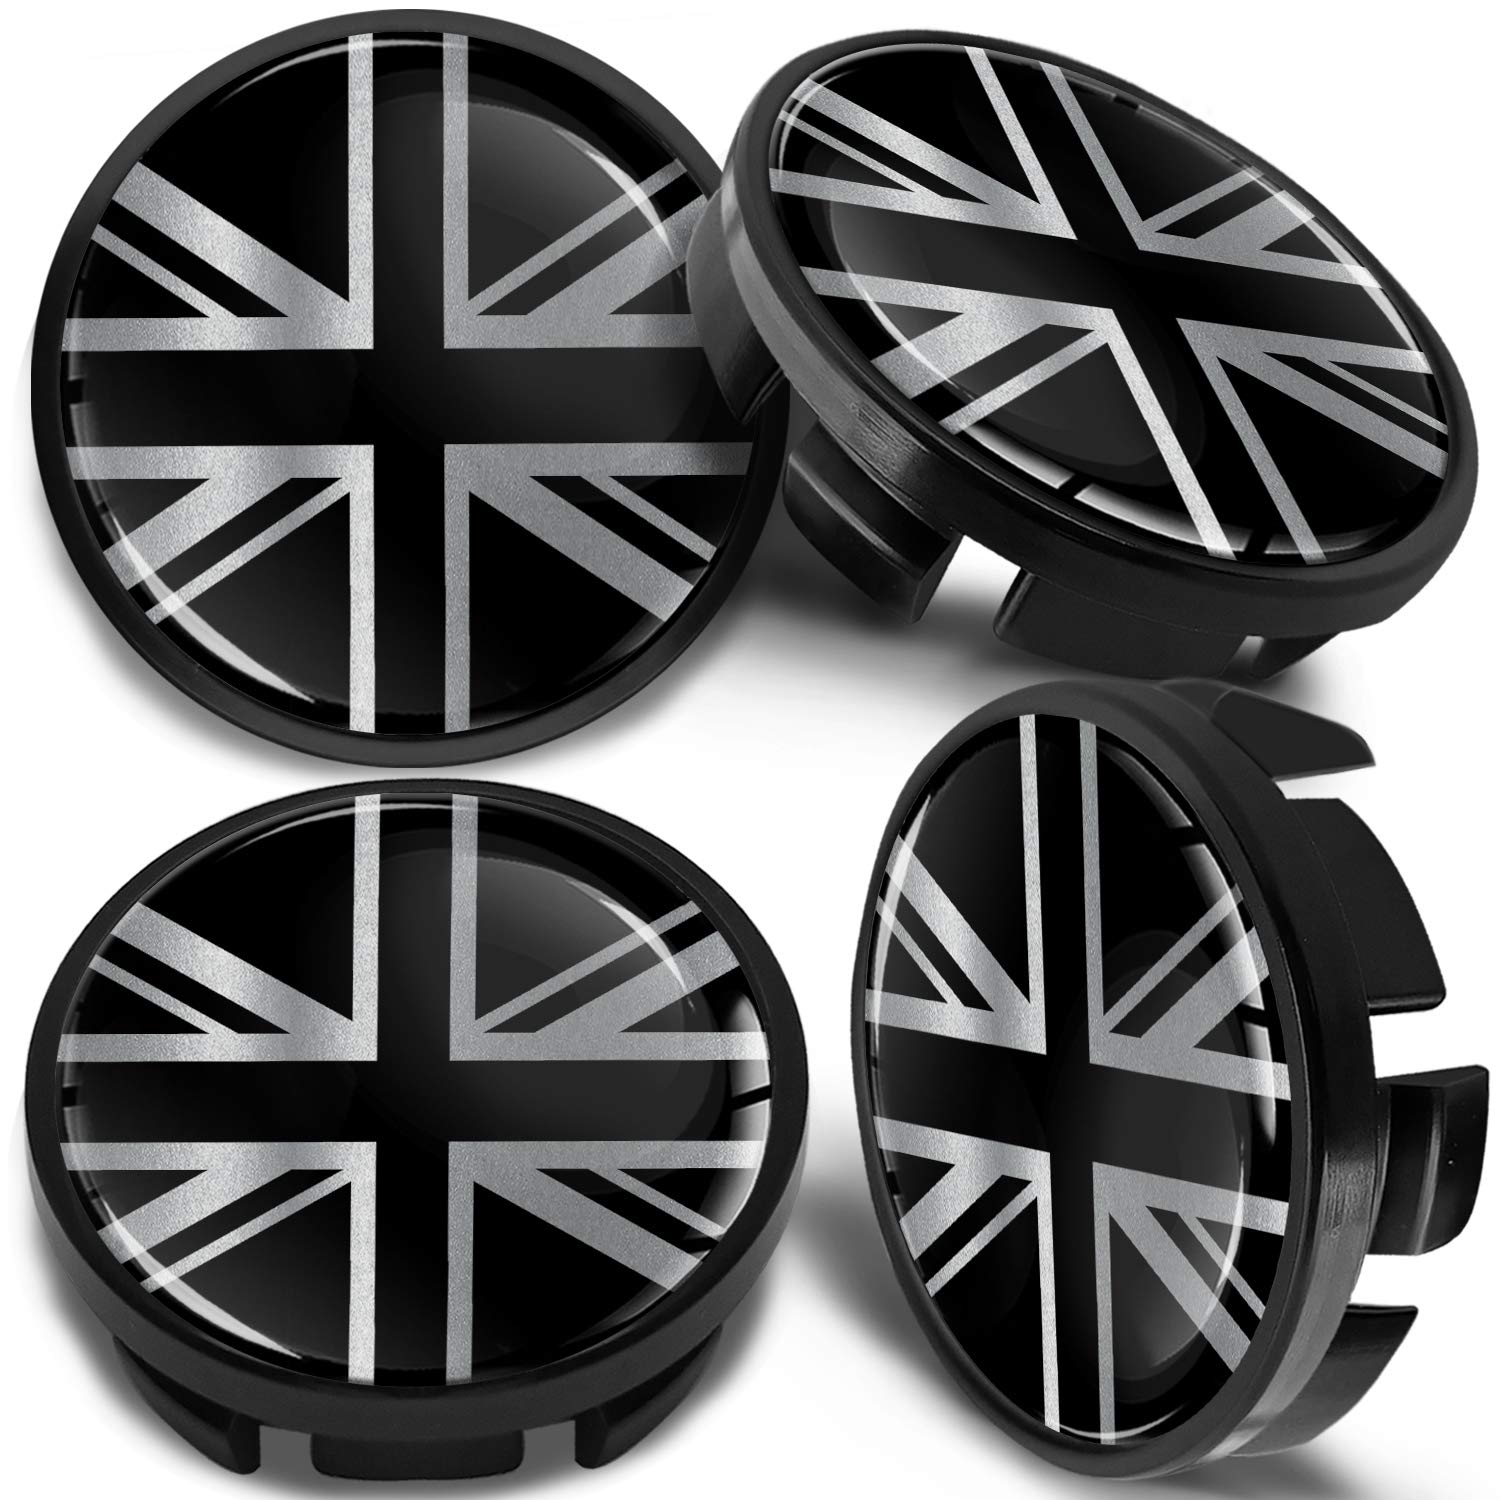 SkinoEu Kompatibel für Nabendeckel VW 65mm Radnabenabdeckung für Alufelgen Felgendeckel Nabenkappe Radkappen UK Großbritannien Flagge Schwarz CV 29 von SkinoEu